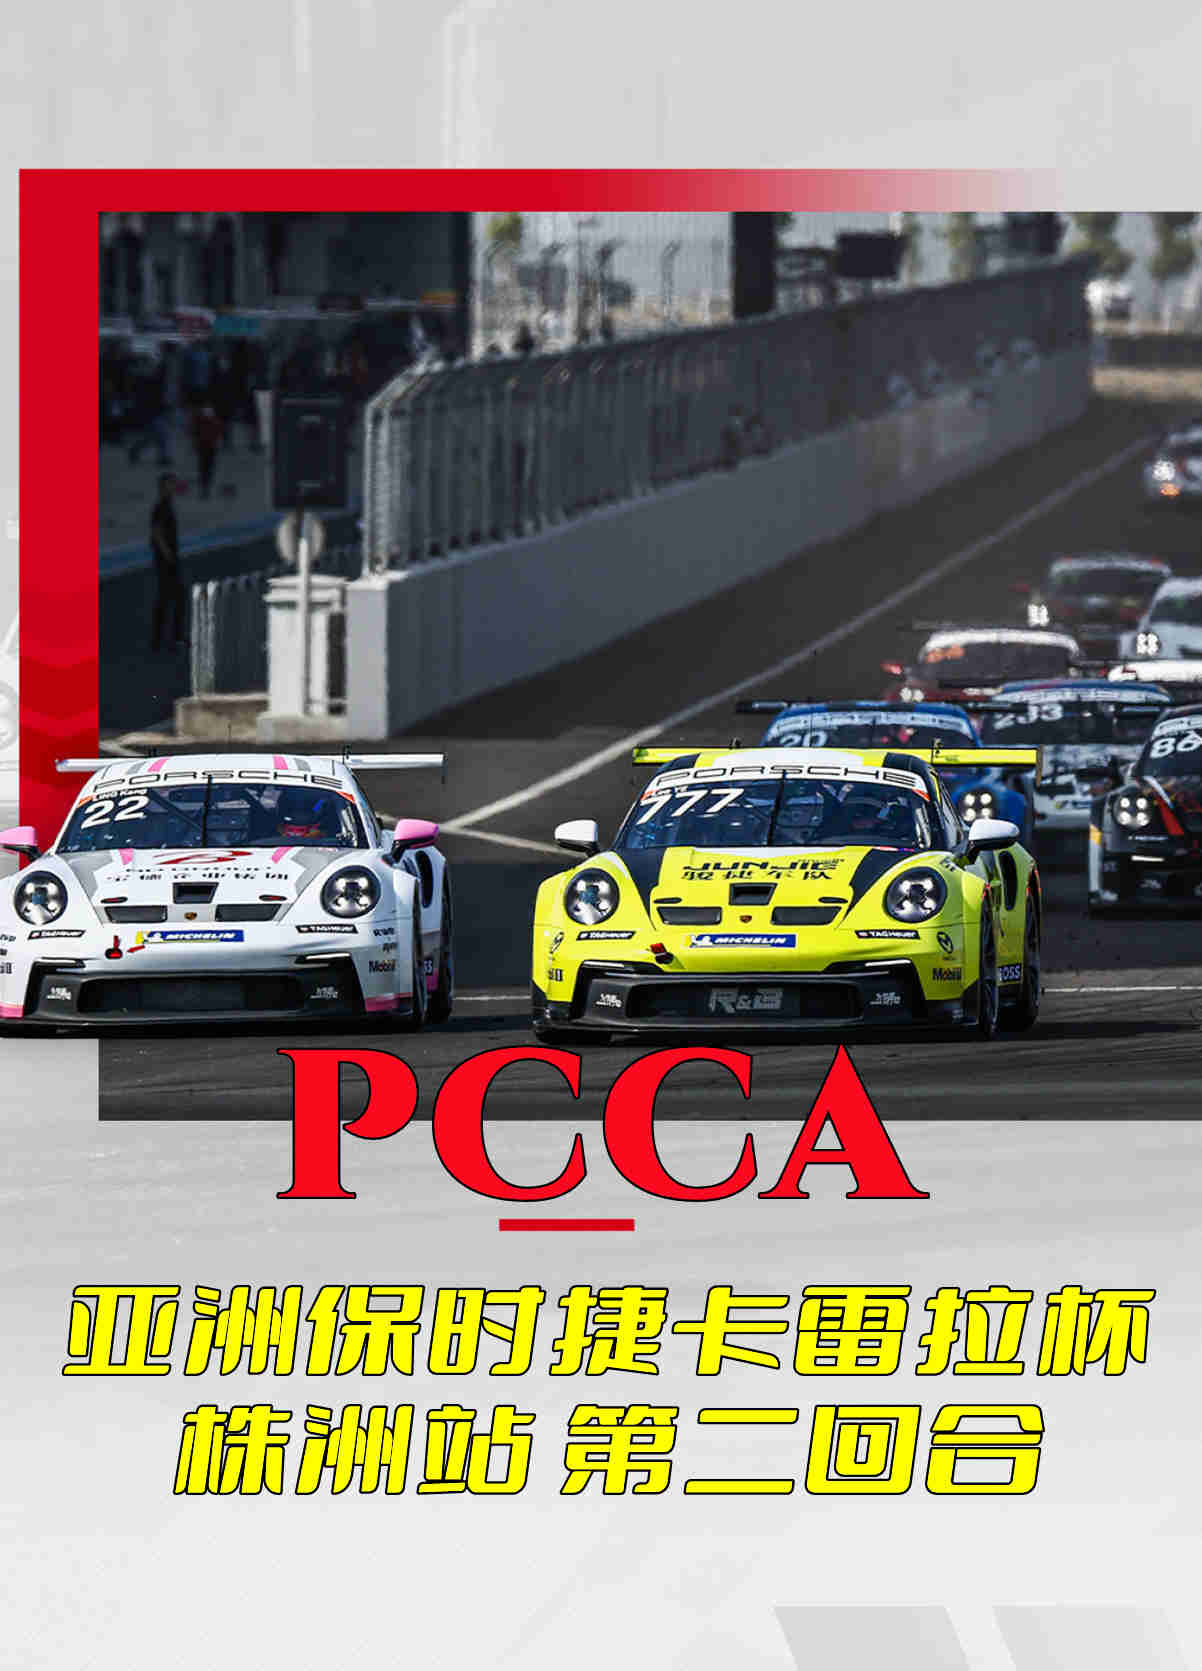 PCCA 亚洲保时捷卡雷拉杯株洲站 第二回合